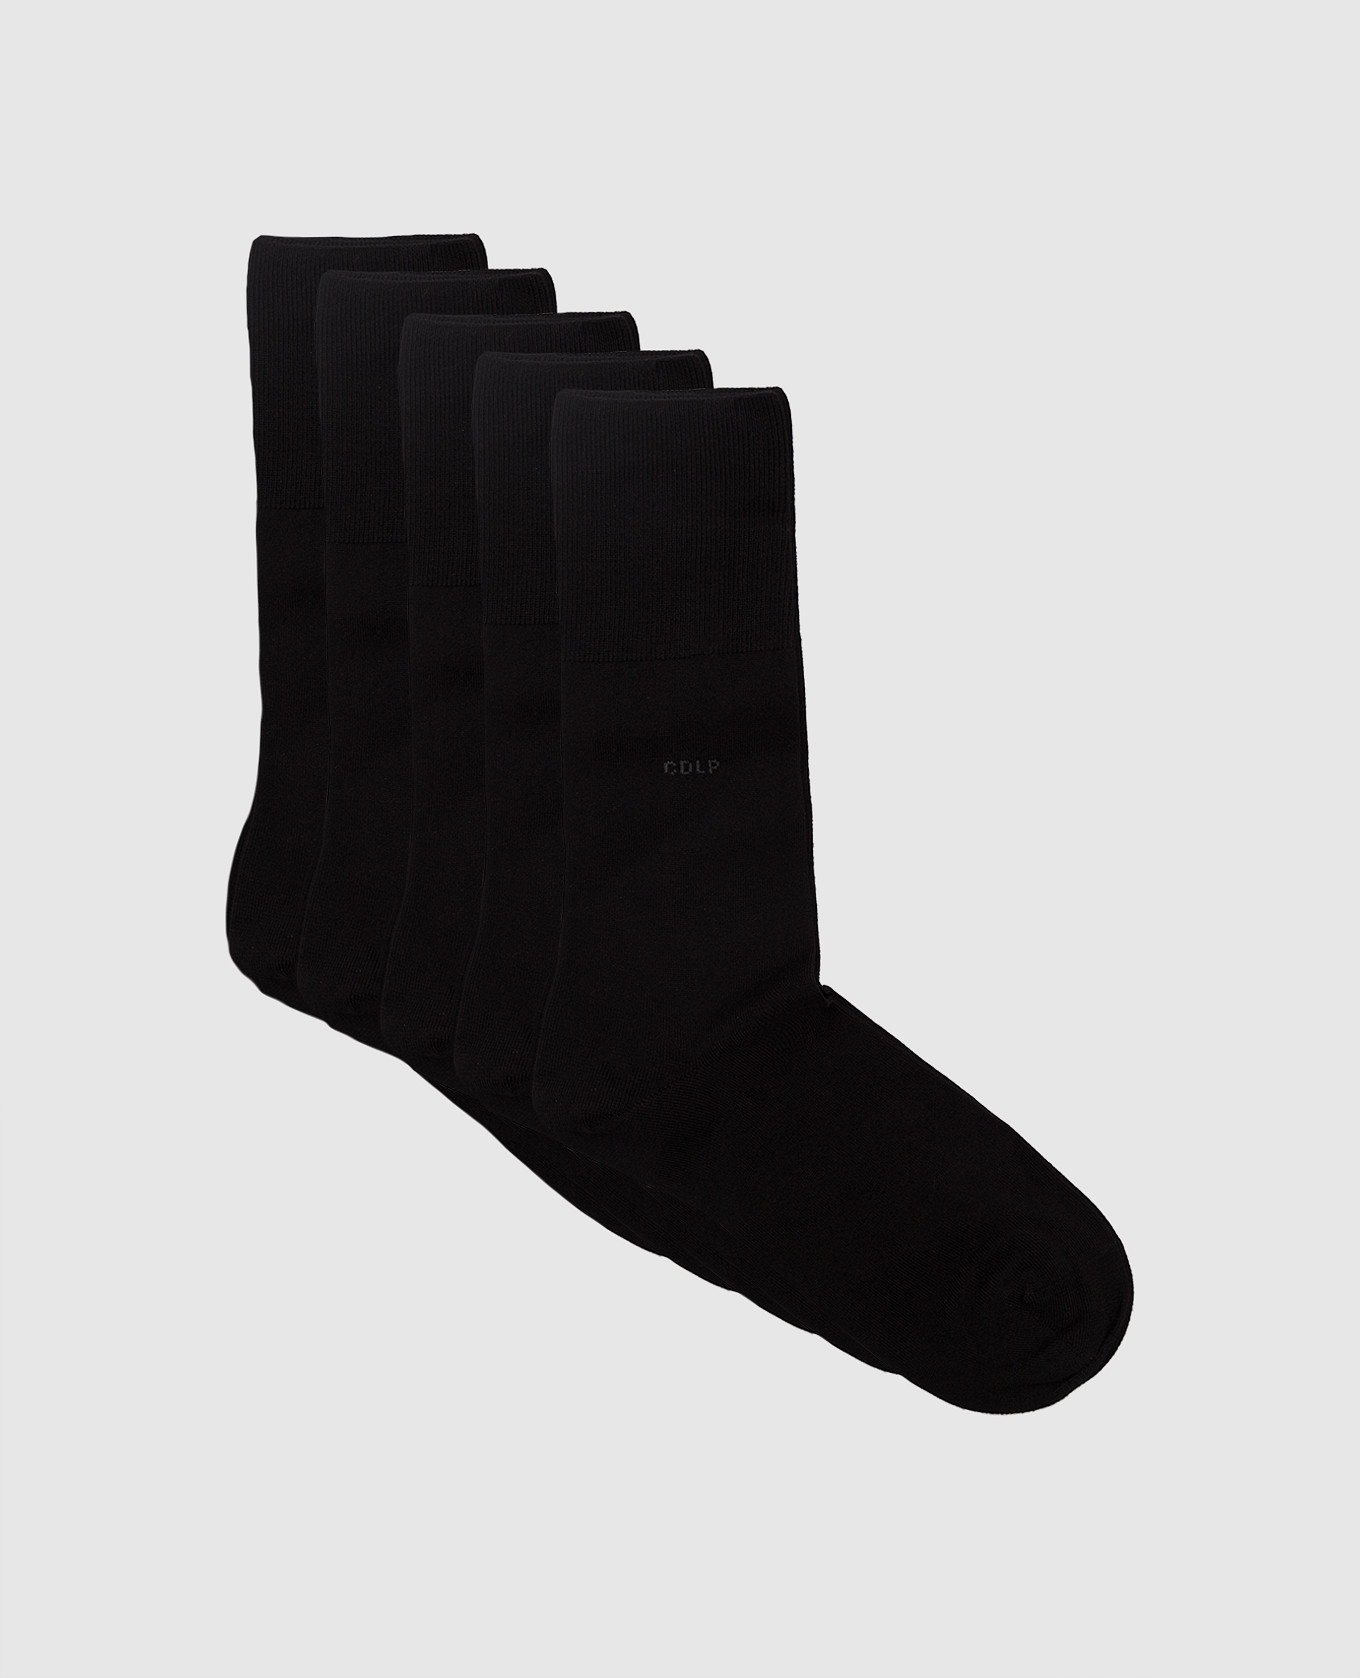 Набор черных носков с логотипом узором.